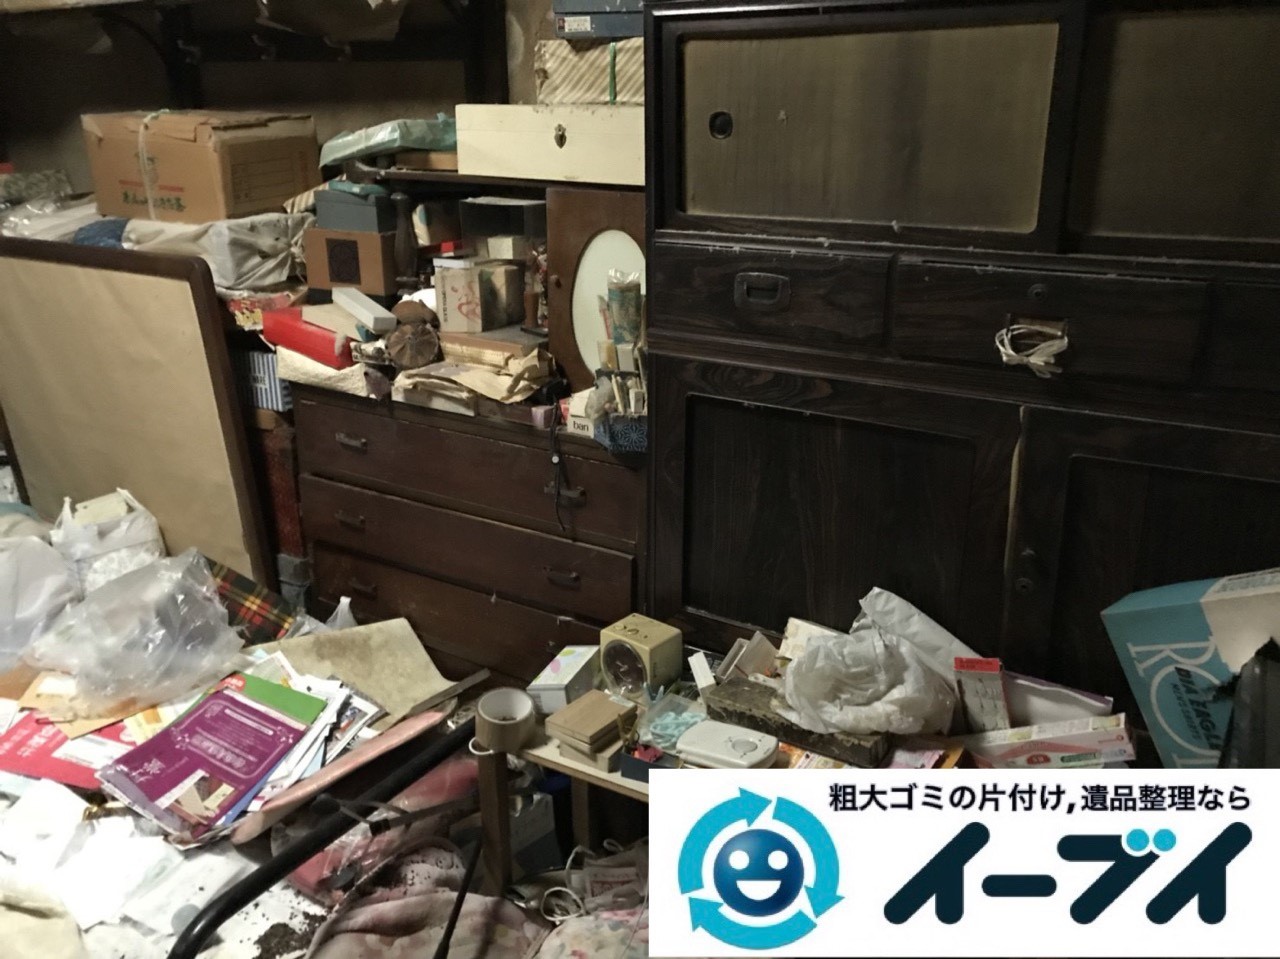 2019年5月25日大阪府豊中市でタンスの粗大ゴミ処分をはじめ、生活用品や生活ゴミが散乱したゴミ屋敷の片付け作業。写真1